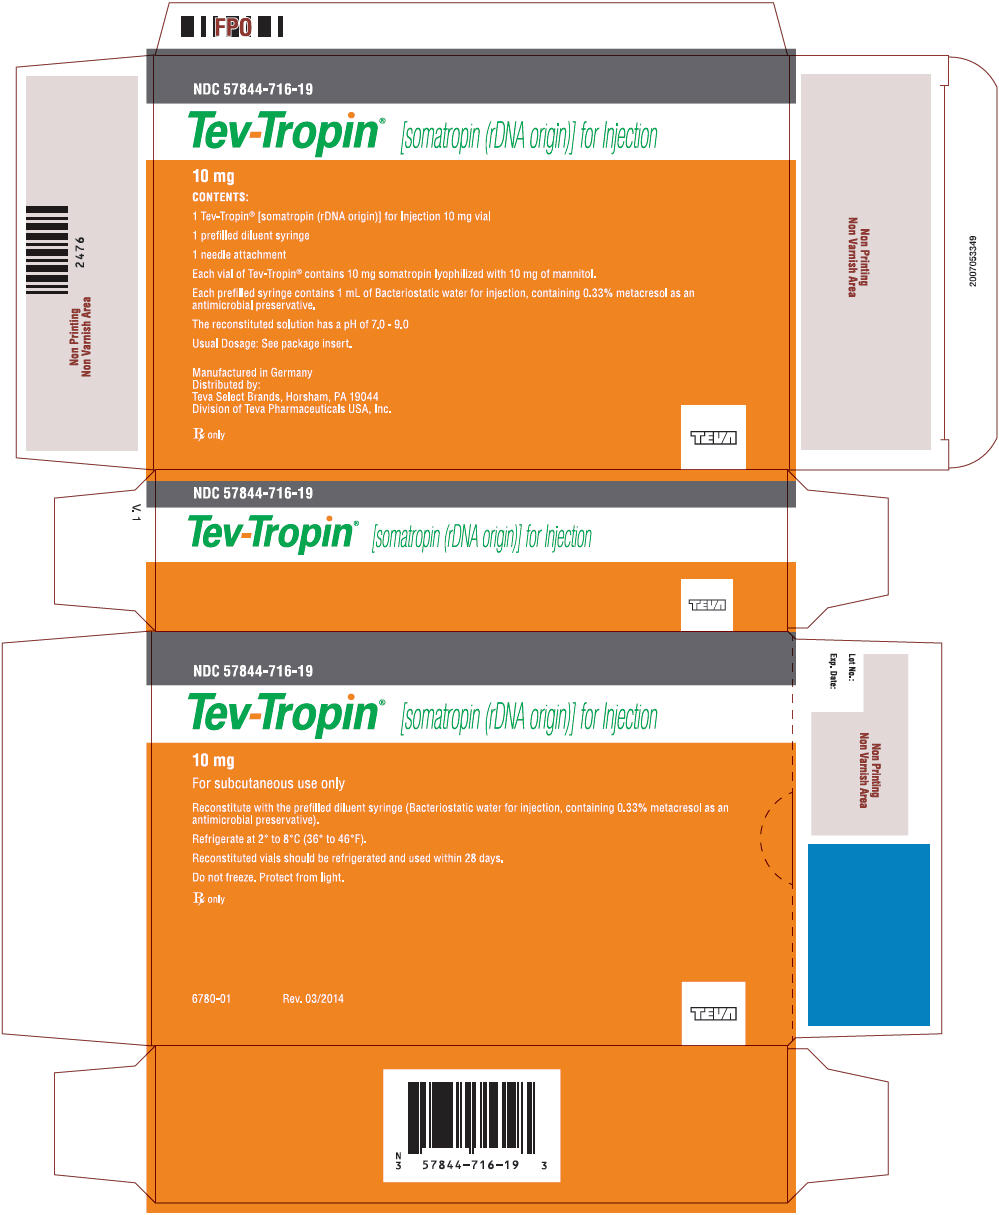 Principal Display Panel - 10 mg Kit Carton